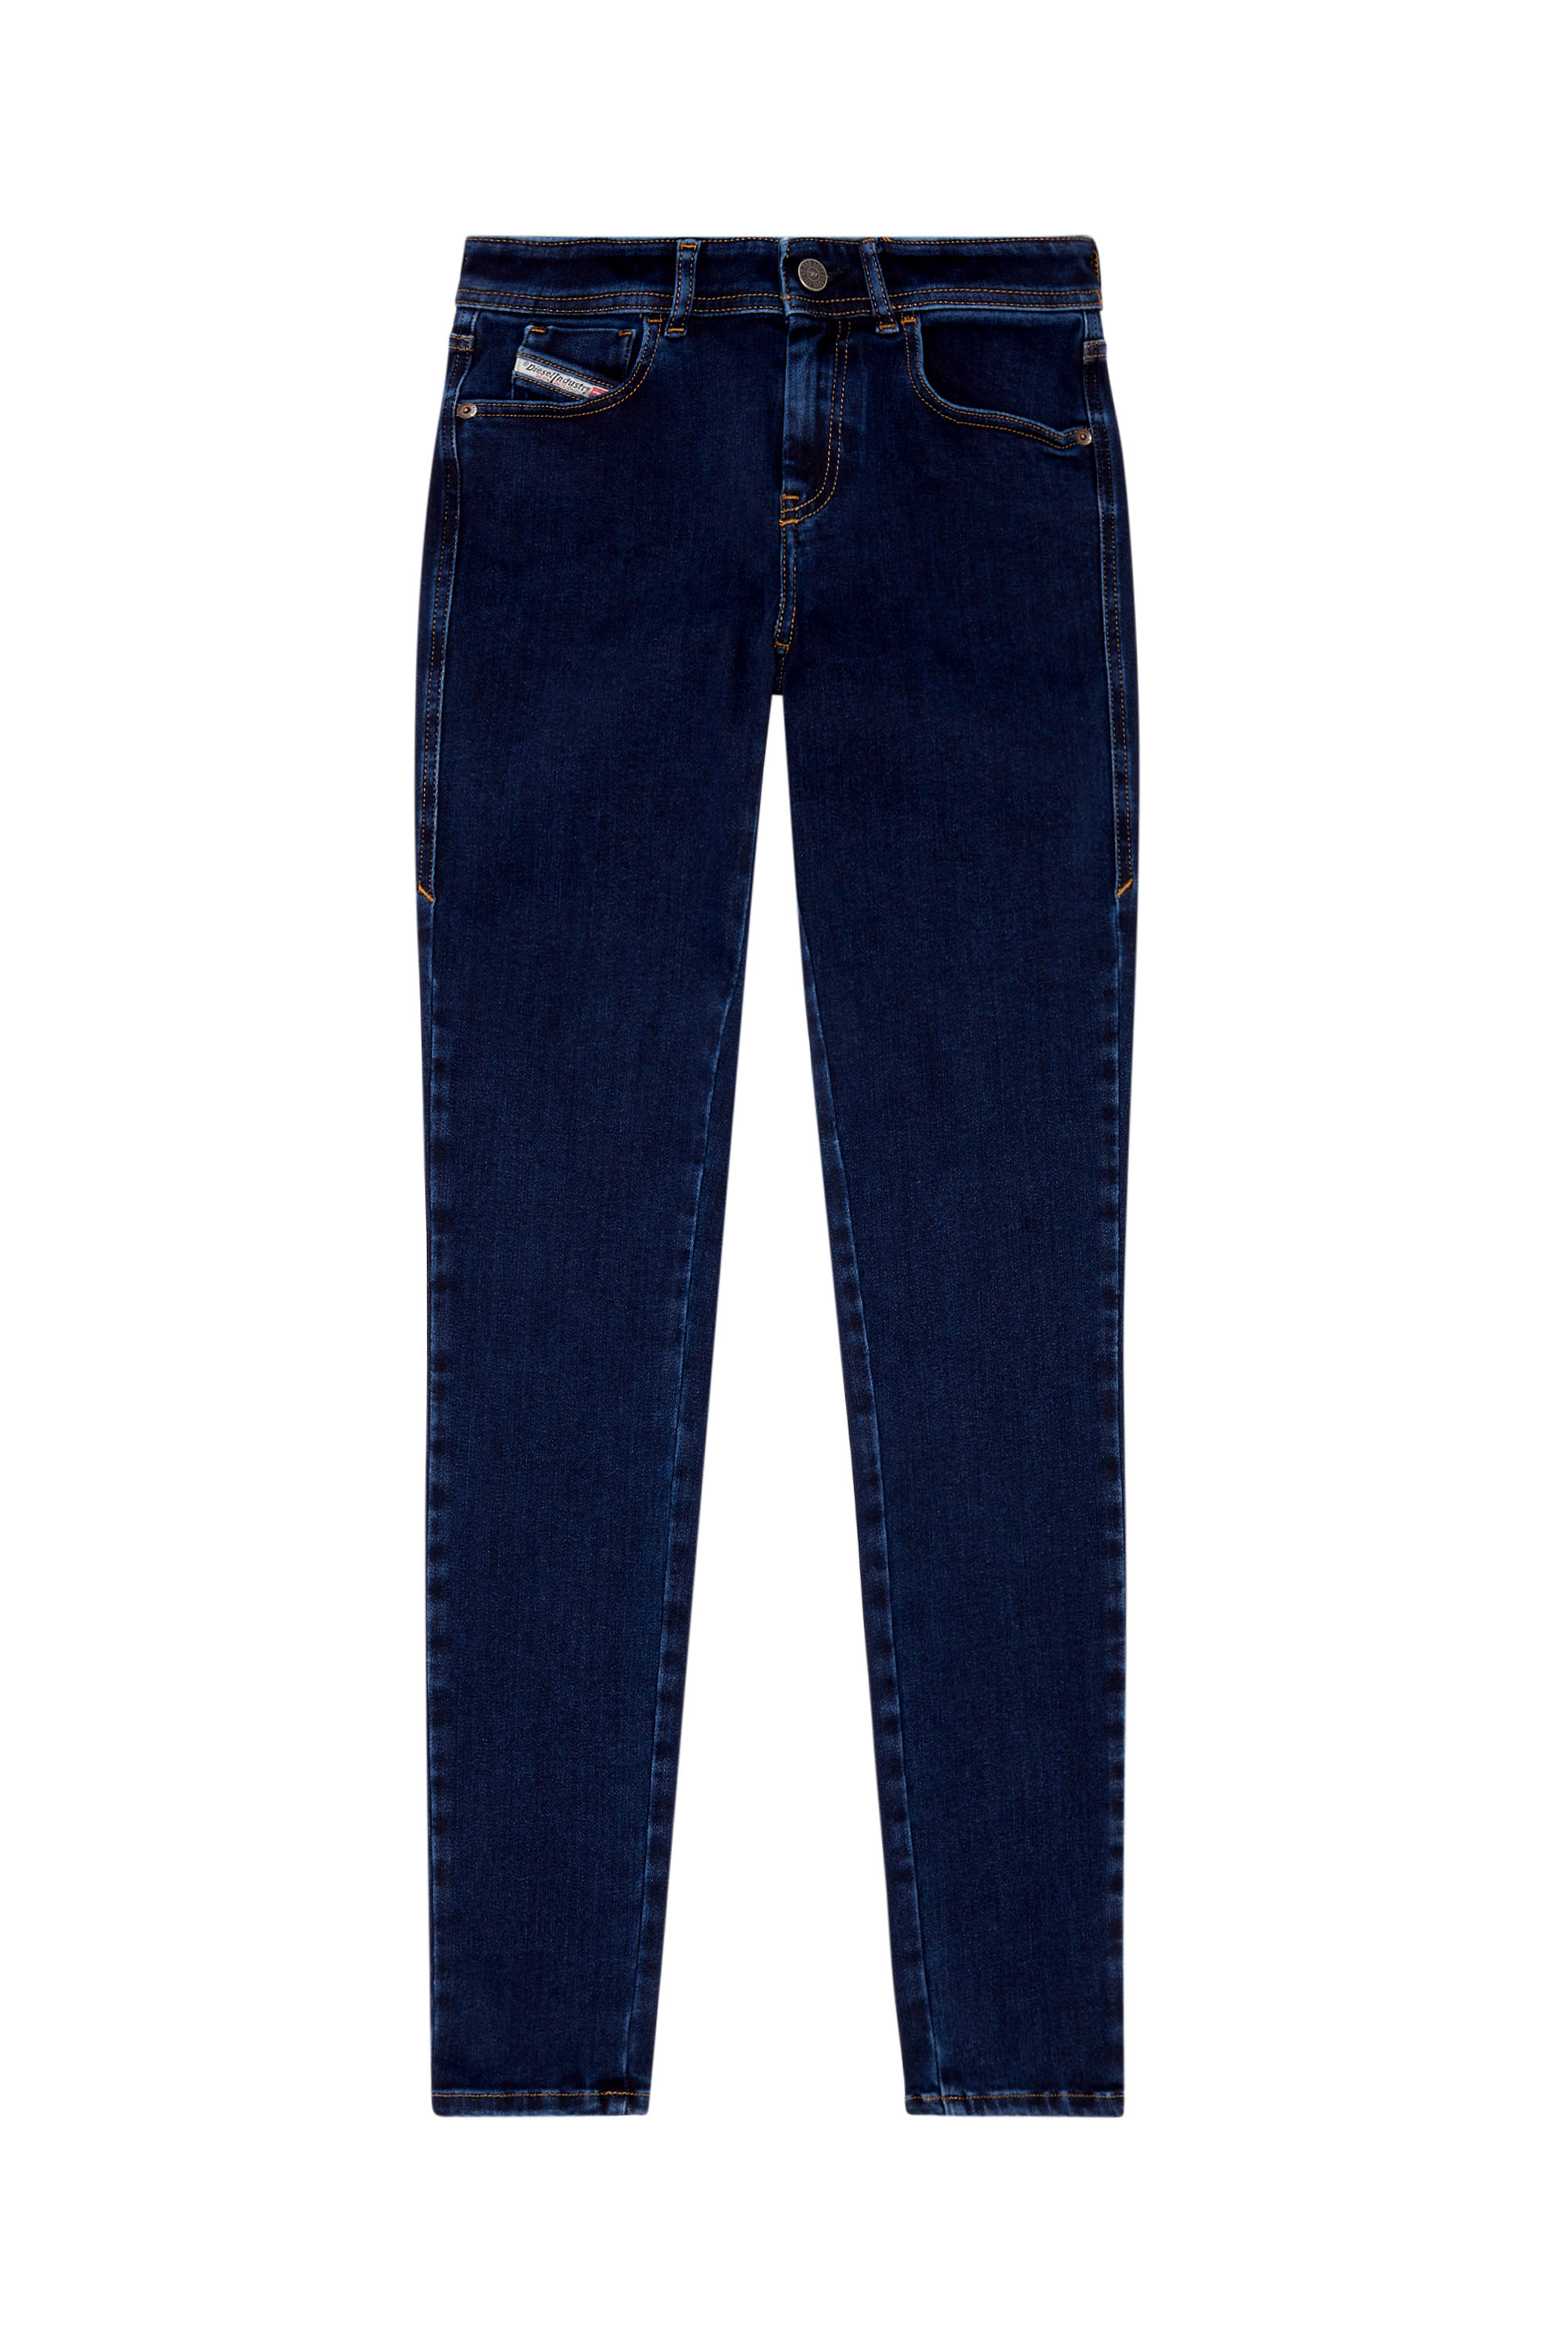 Diesel - Super skinny Jeans 2017 Slandy 09H80, Dark Blue - Image 5